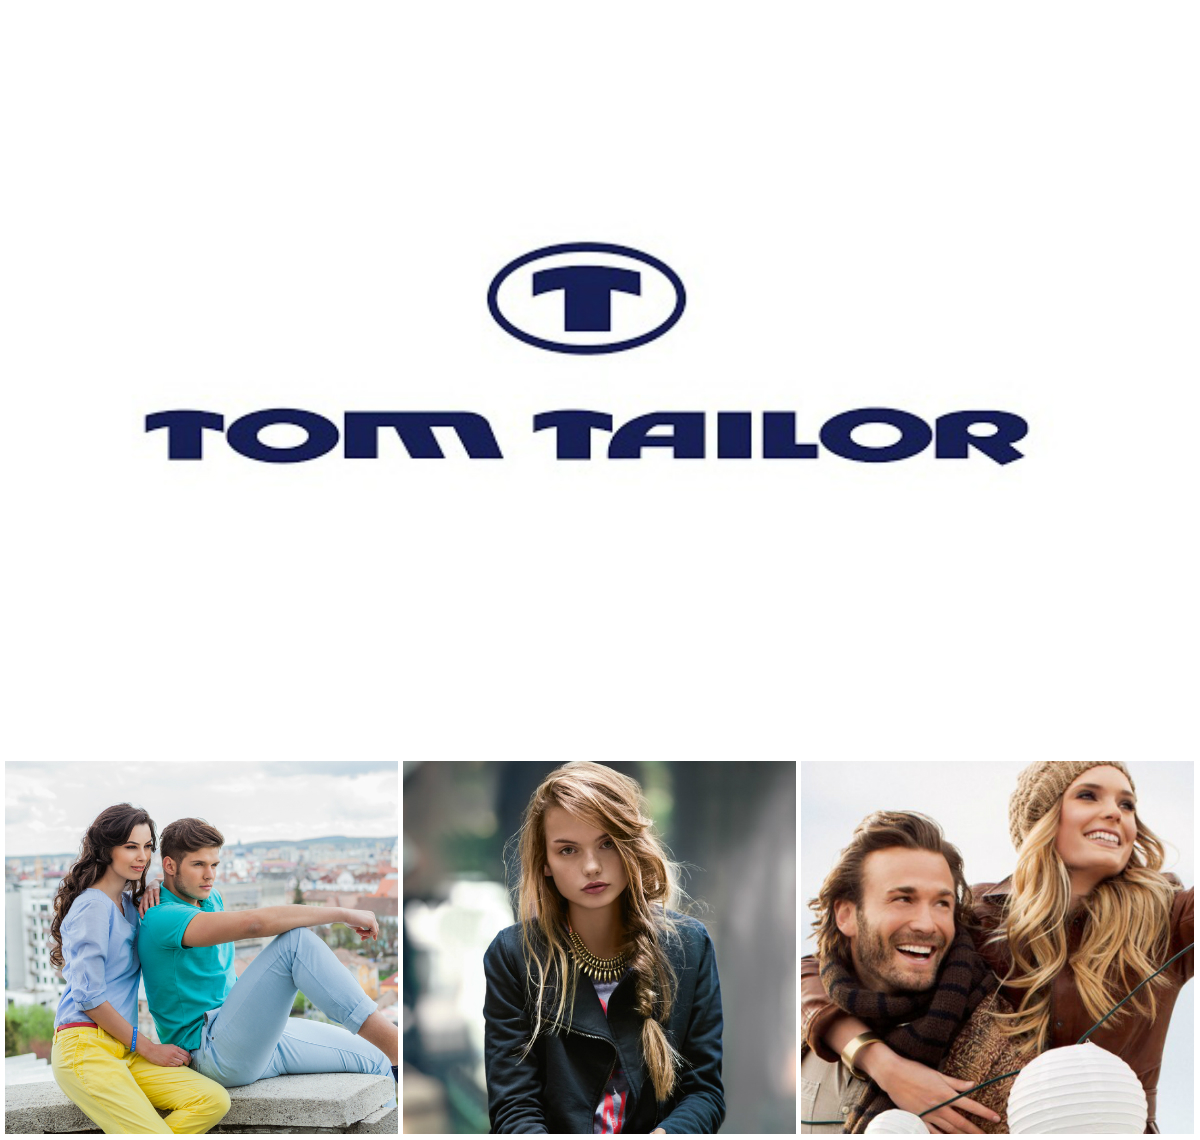 Том тейлор каталог товаров. Бренд одежды Tom Tailor. Tom Tailor логотип. Tom Tailor 957872.